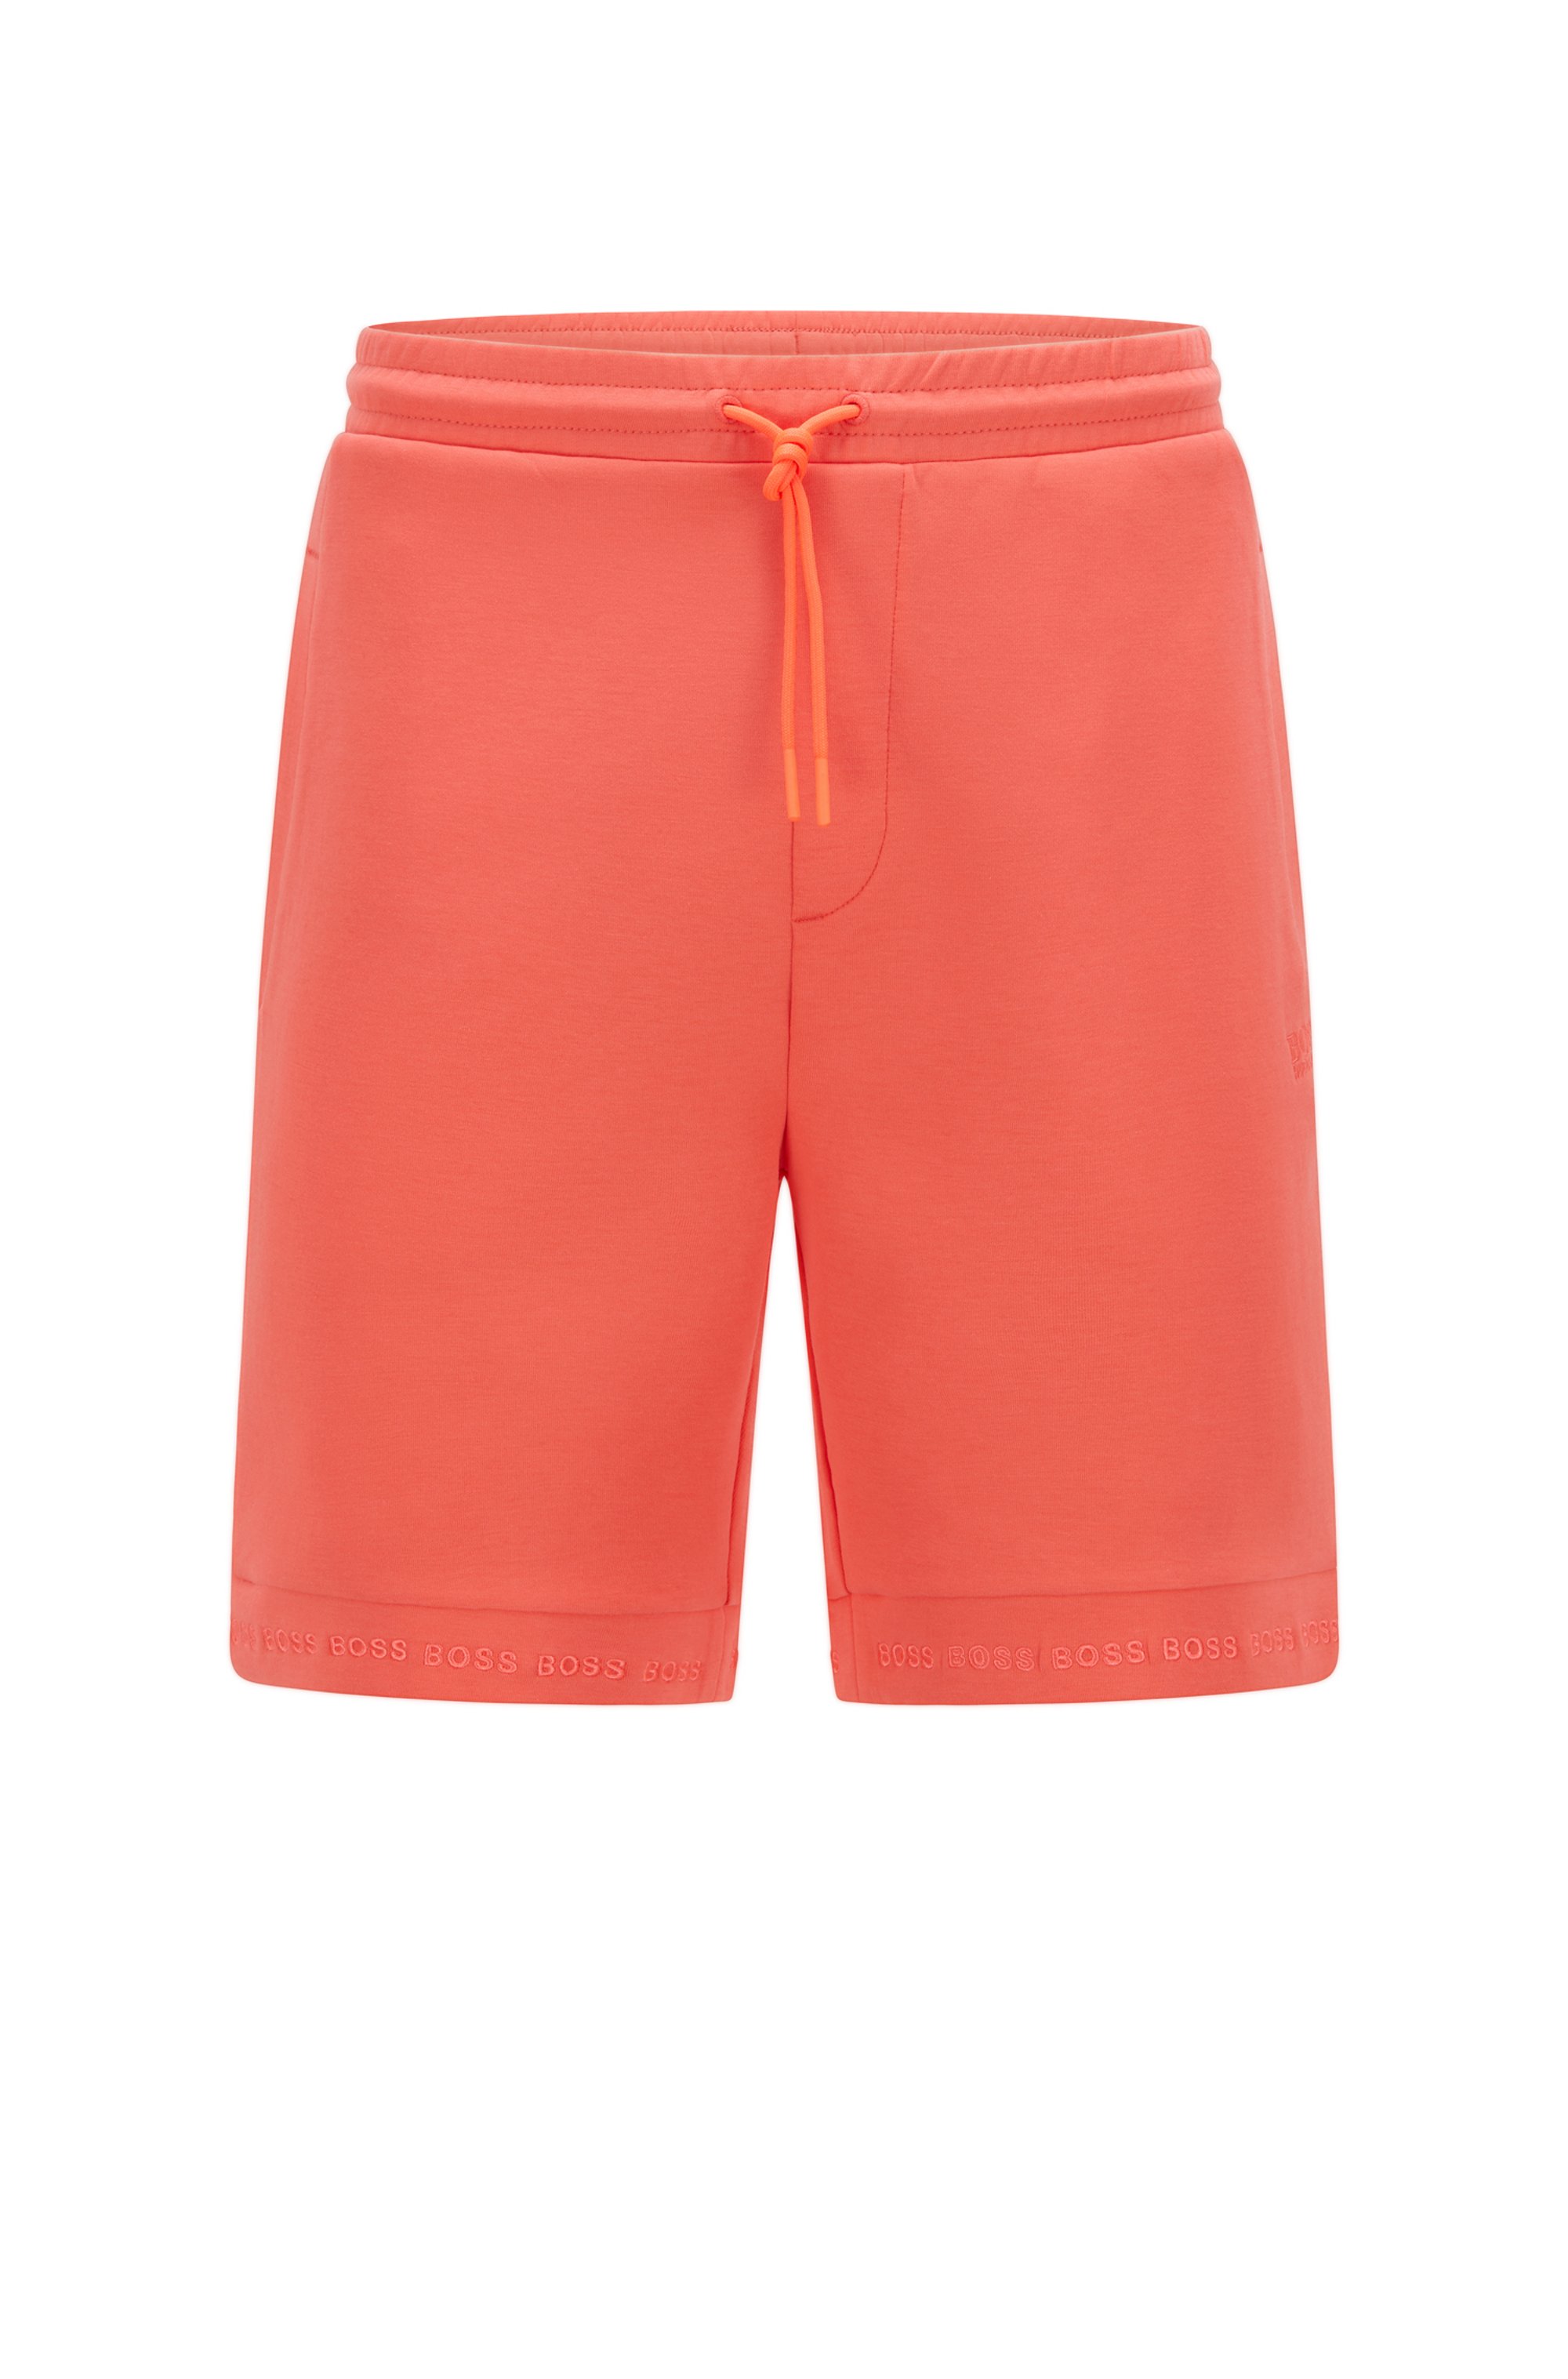 Shorts regular fit en punto elástico con logo en los bajos, Rojo claro